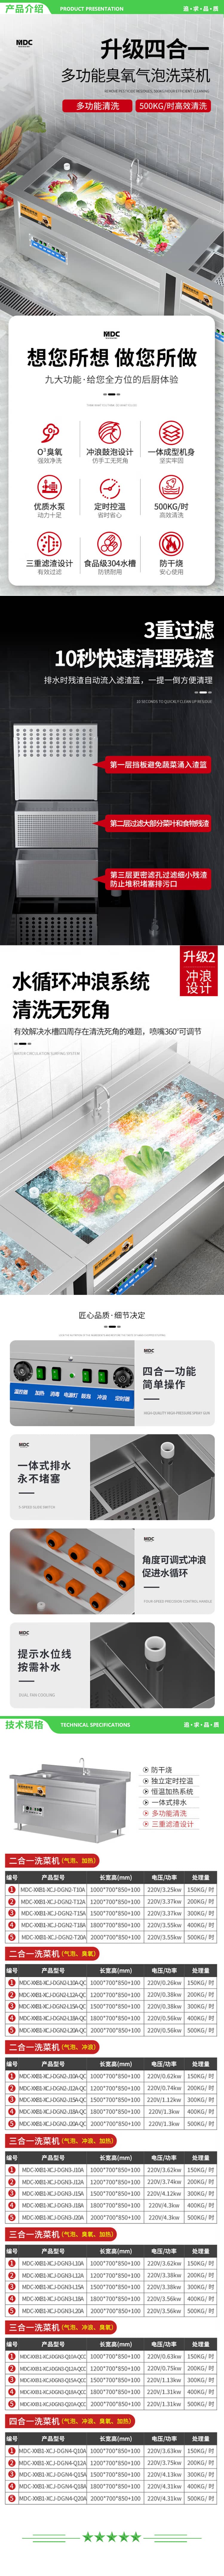 麦大厨 MDC-XXB1-XCJ-DGN3-J20A 商用洗菜机全自动多功能涡流加热气泡冲浪式食堂果蔬清洗机 2.jpg